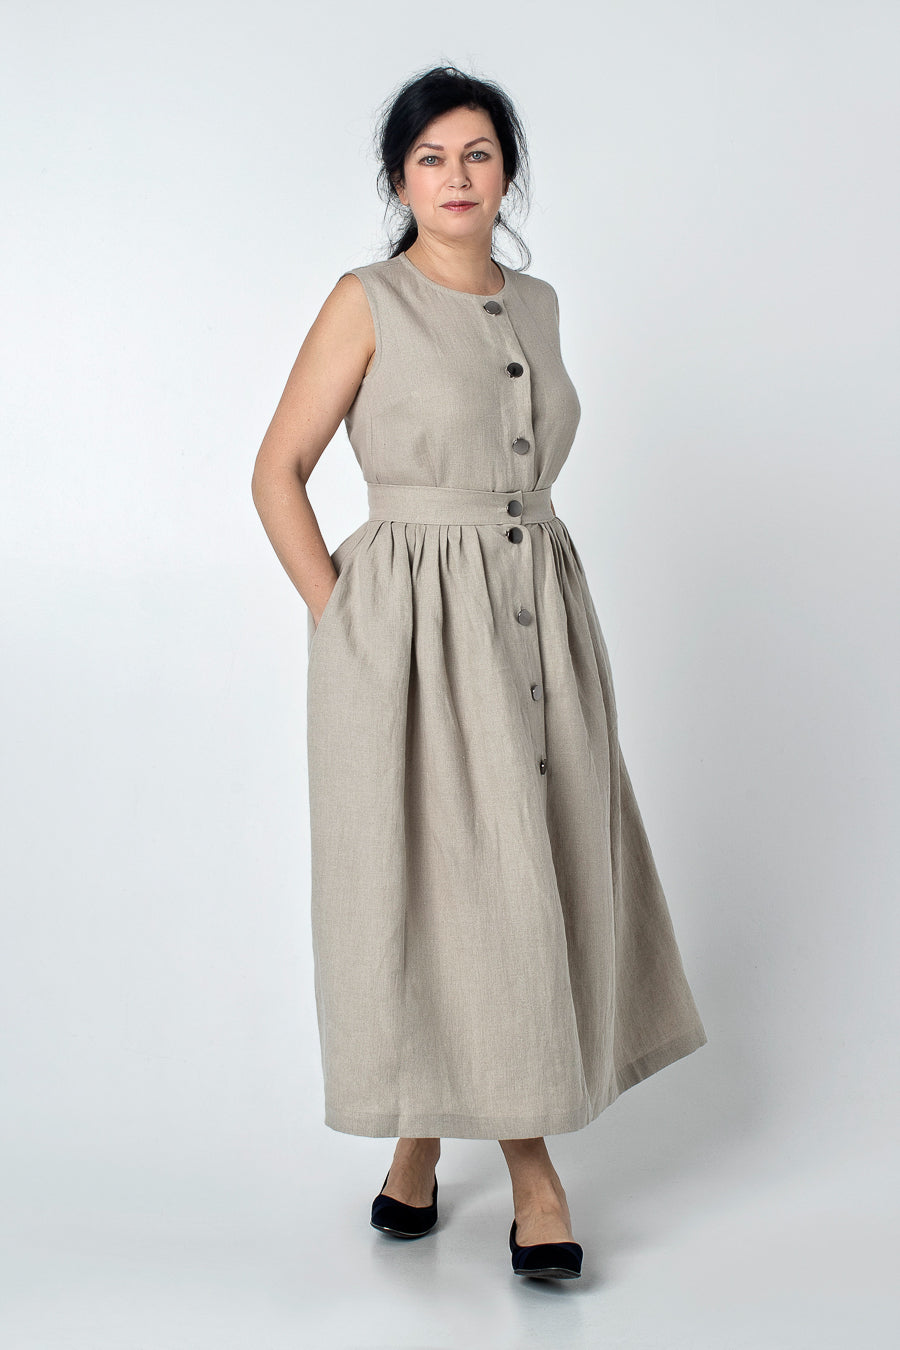 KINAYO | Sleeveless linen blouse with buttons - Mezzoroni